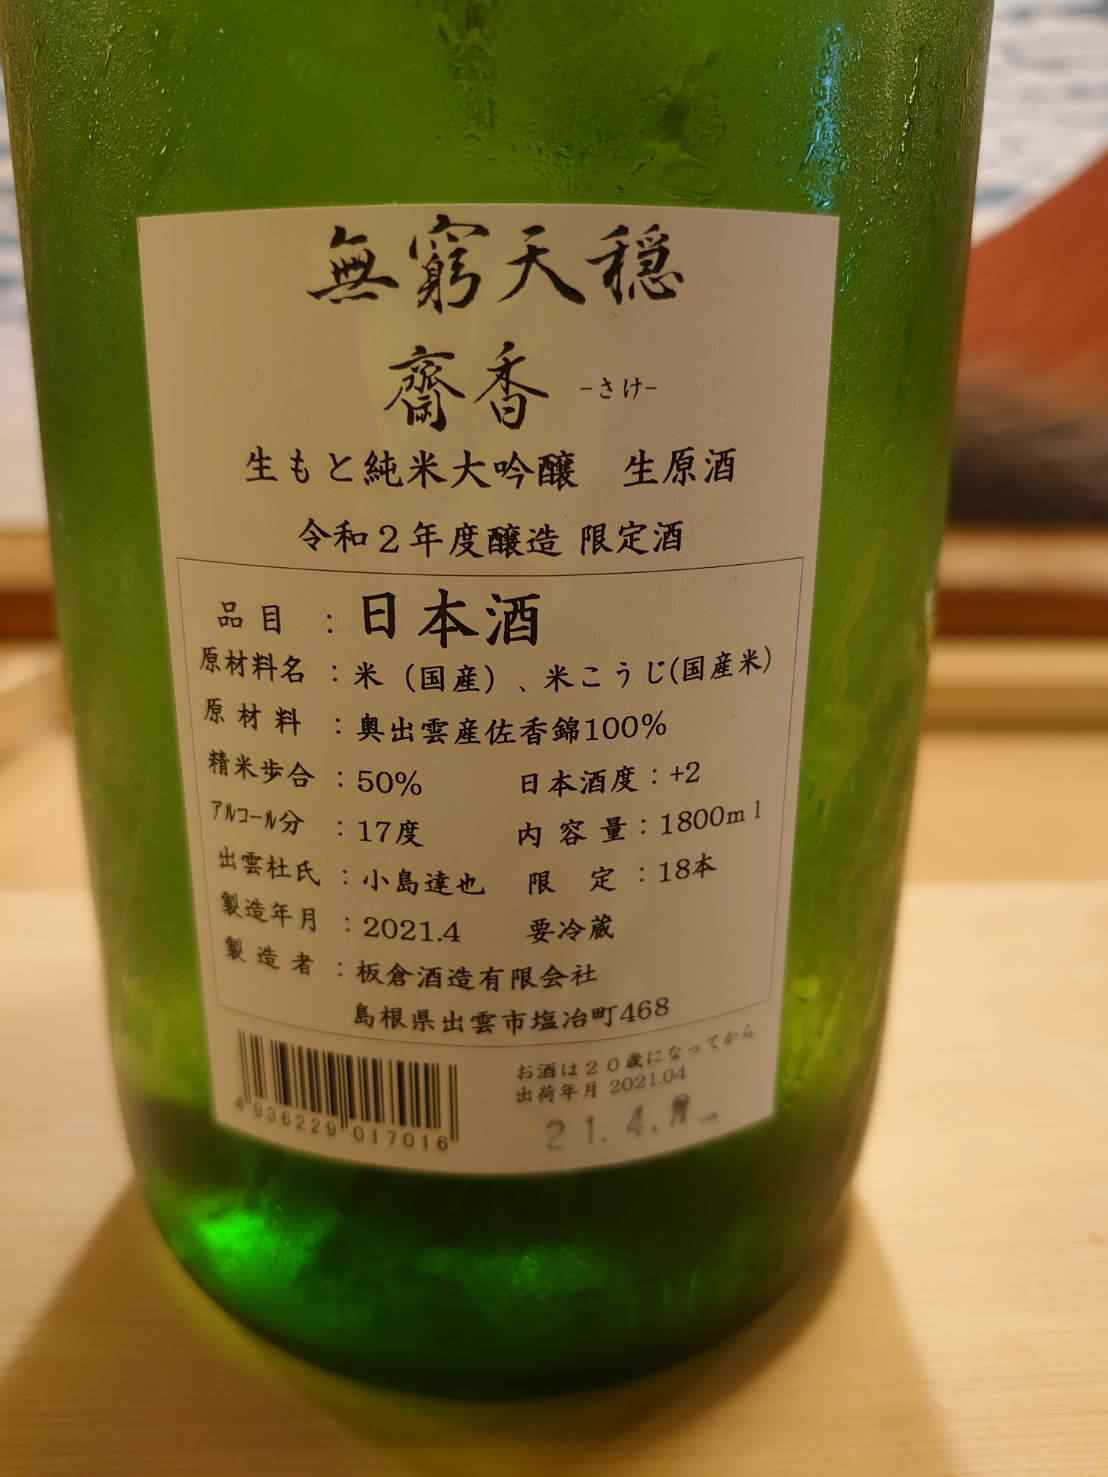 過去の日本酒とコメント - 寿司ふじ 大津 日本料理